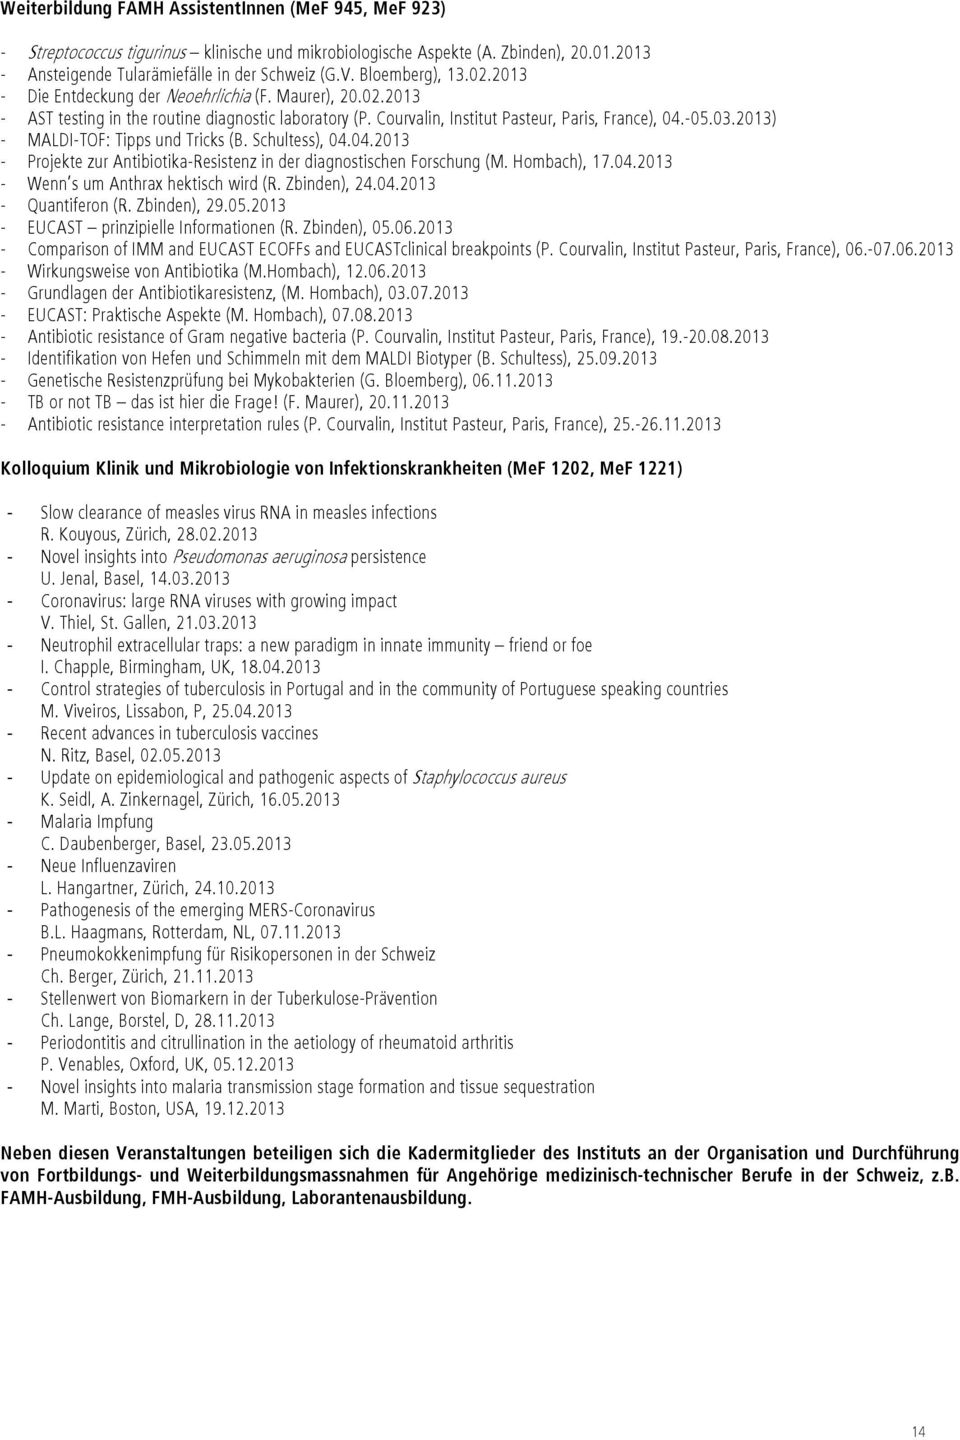 2013) - MALDI-TOF: Tipps und Tricks (B. Schultess), 04.04.2013 - Projekte zur Antibiotika-Resistenz in der diagnostischen Forschung (M. Hombach), 17.04.2013 - Wenn s um Anthrax hektisch wird (R.